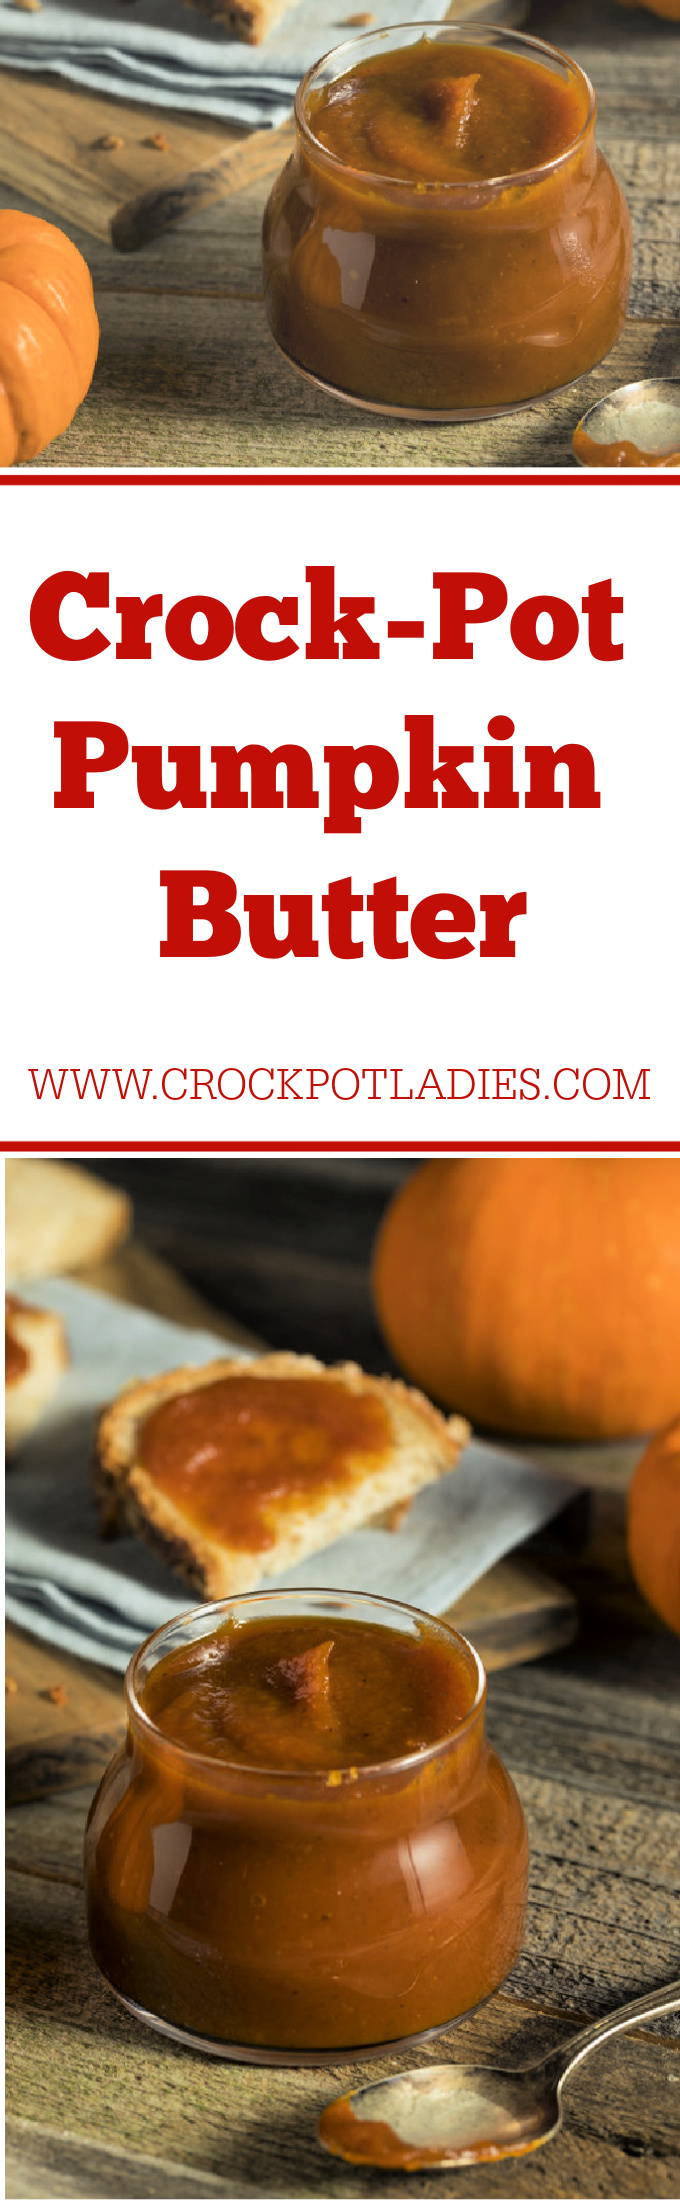 Crock-Pot Pumpkin Butter